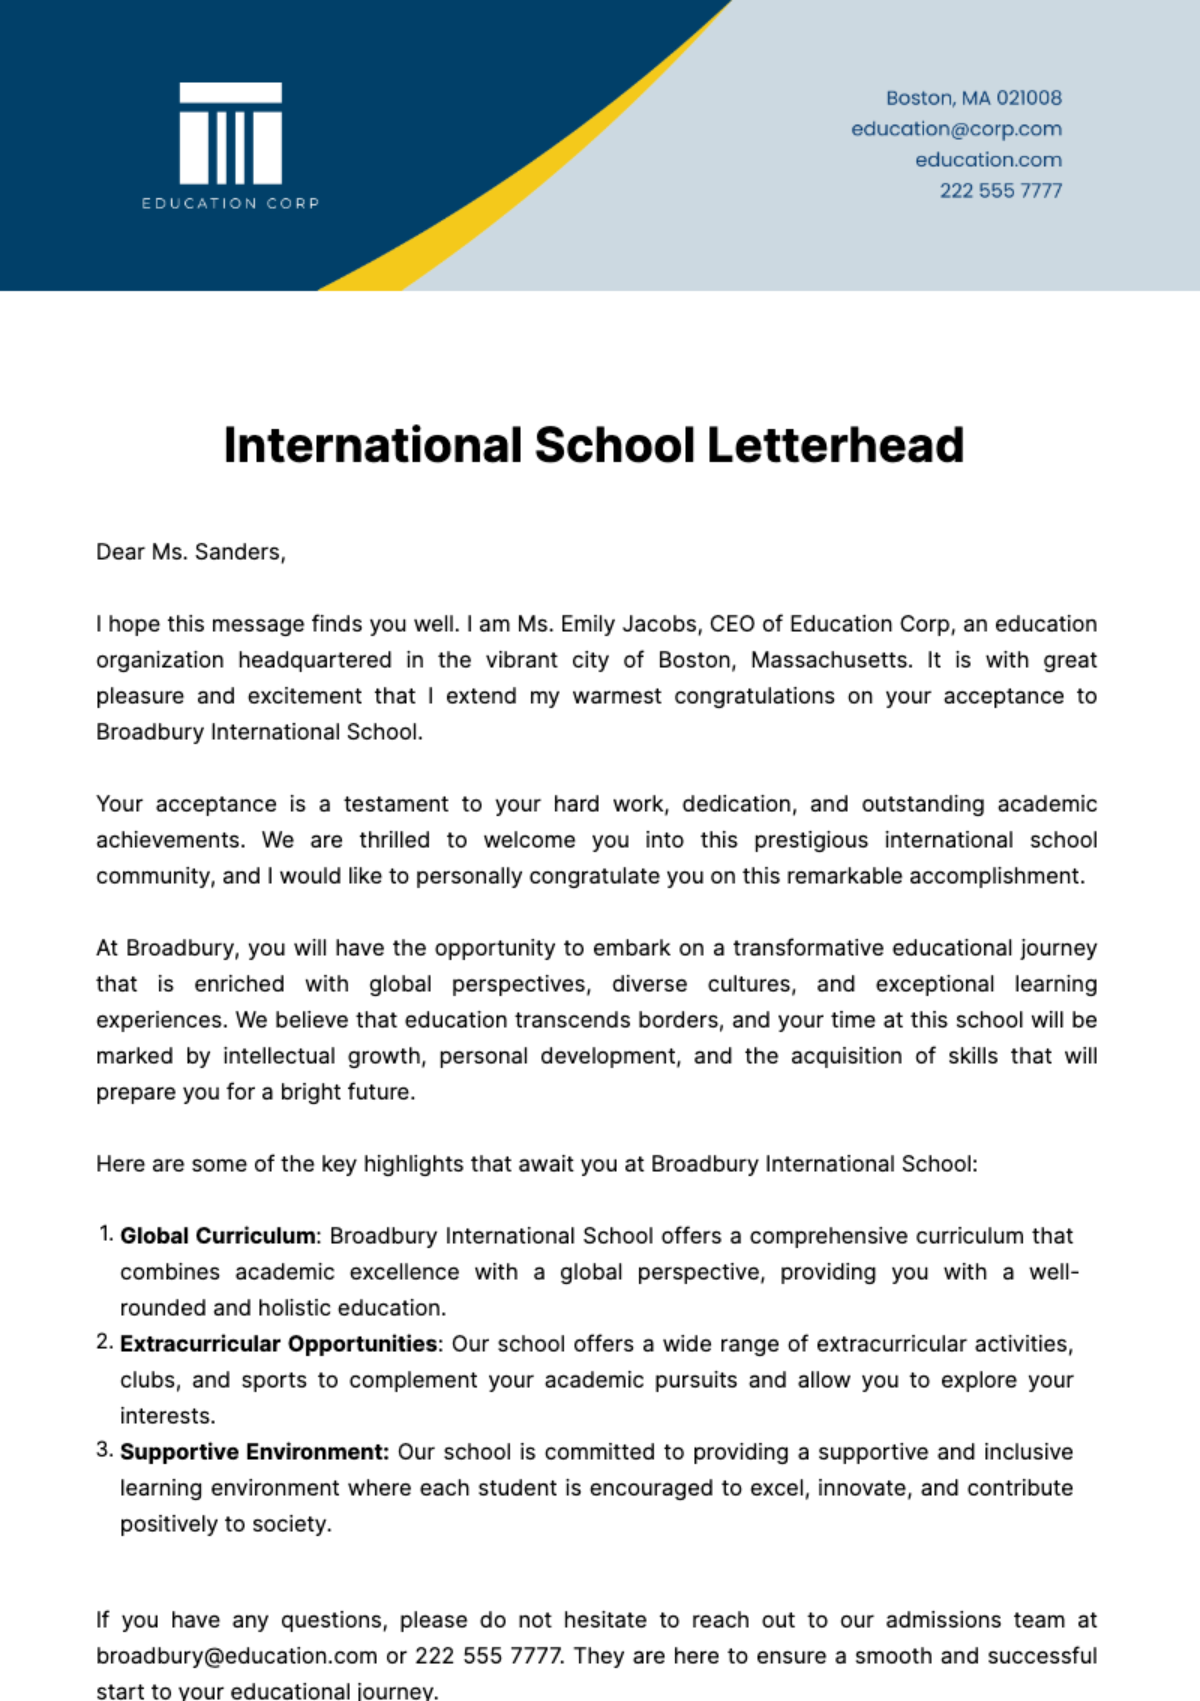 Free International School Letterhead Template